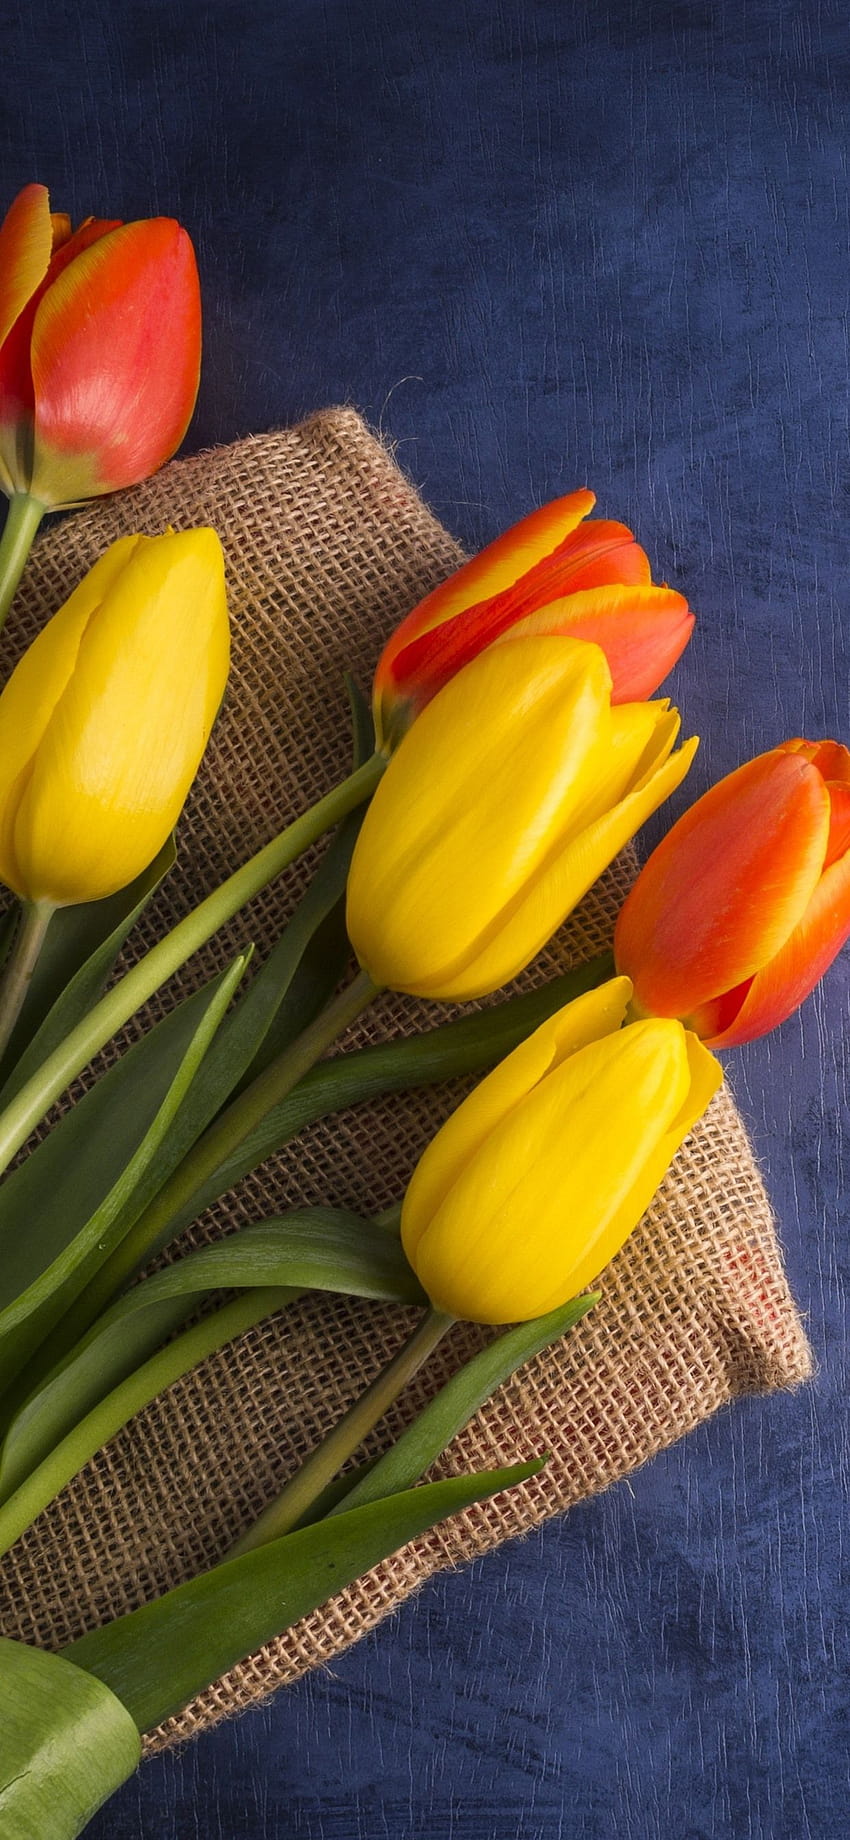 Tulip kuning dan jingga, karangan bunga 1242x2688 iPhone 11 Pro/XS Max, latar belakang, kumpulan tulip jingga wallpaper ponsel HD